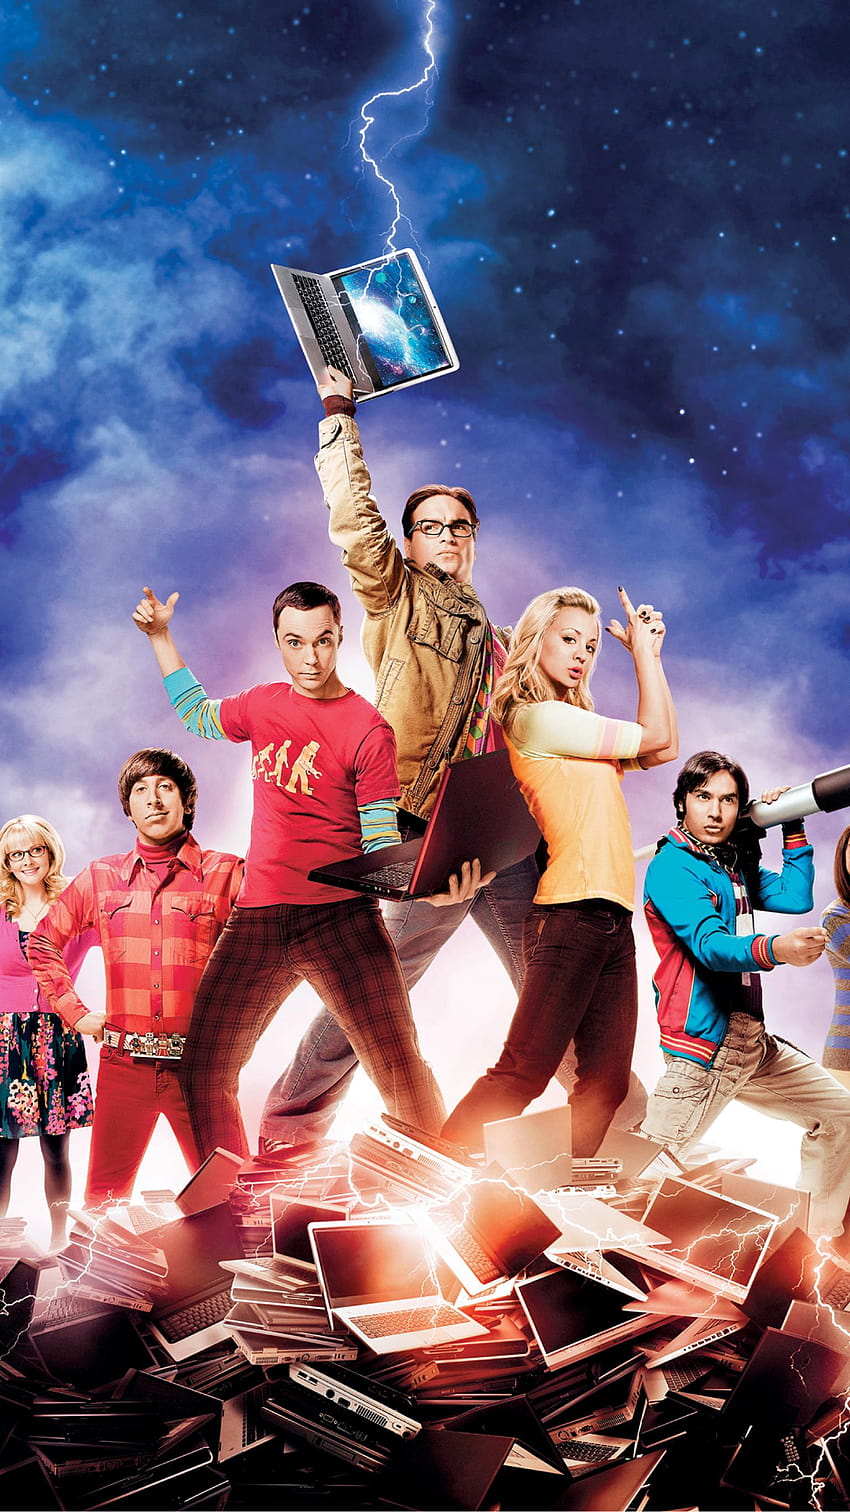 The Big Bang Theory Phone, the big bang theory characters HD phone wallpaper